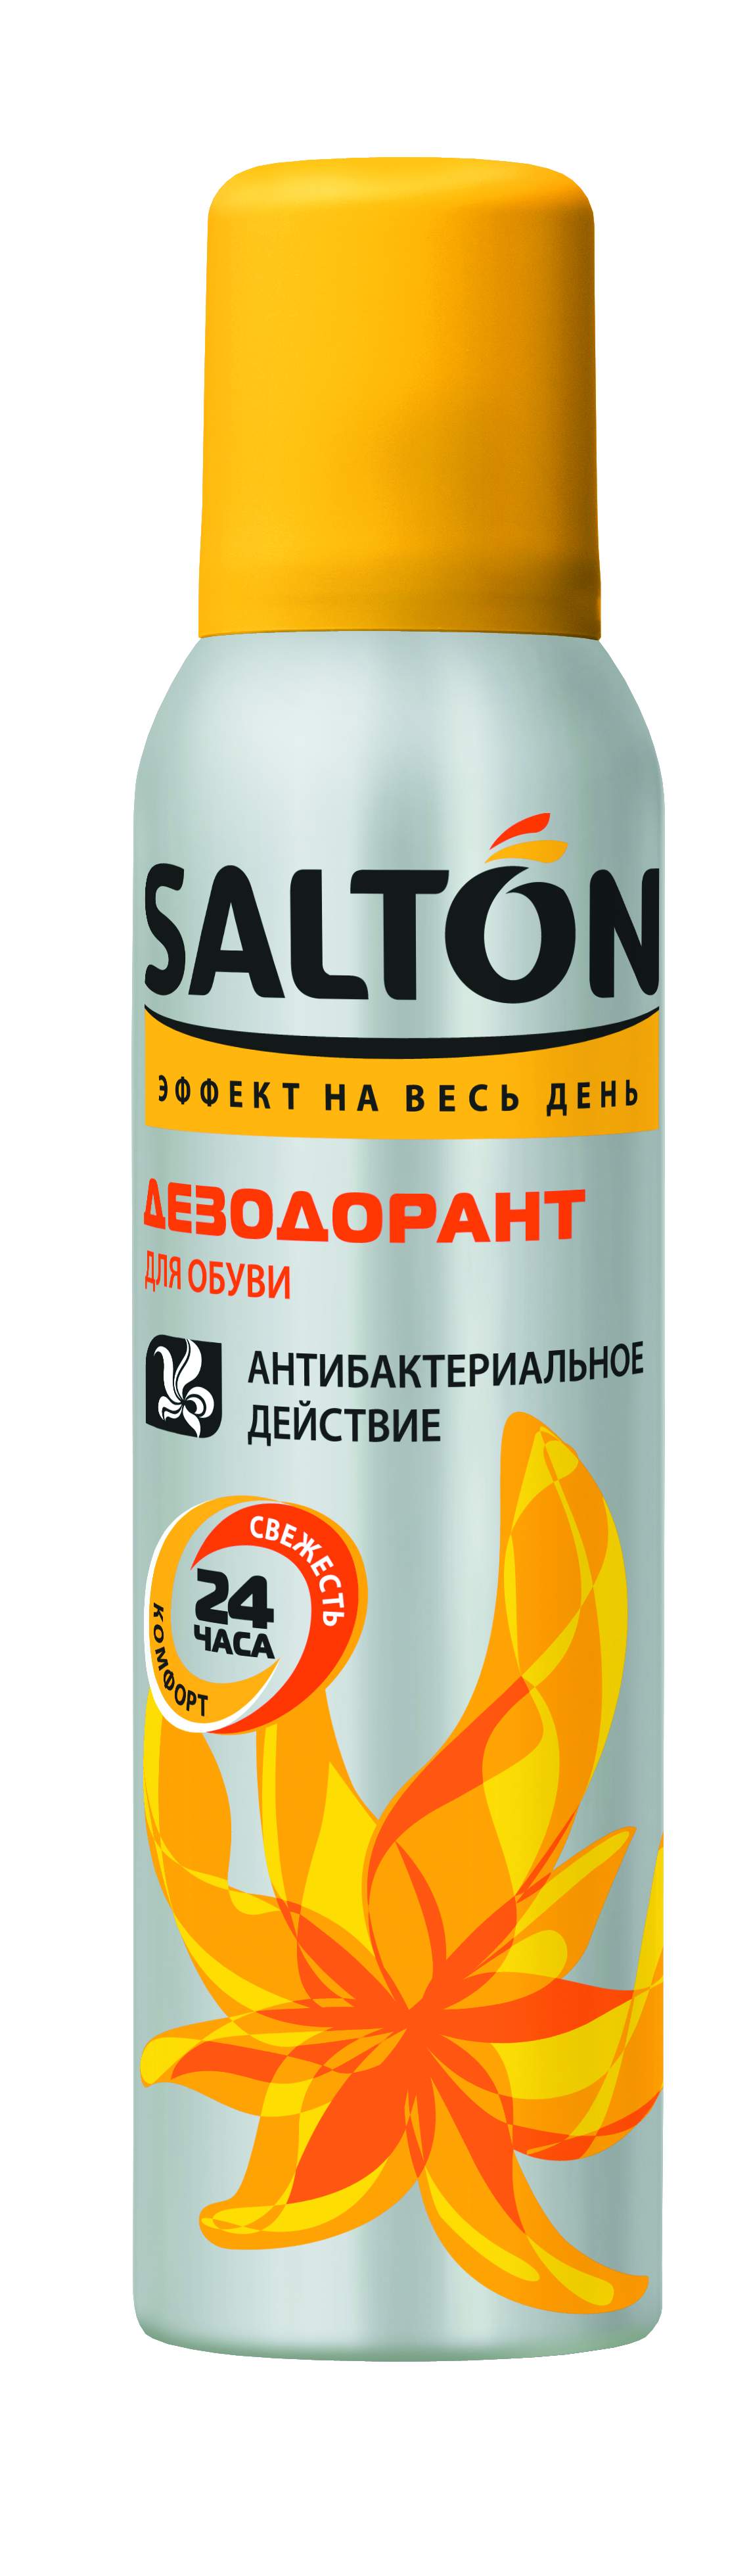 Дезодорант для обуви SALTON  150 мл в Киеве